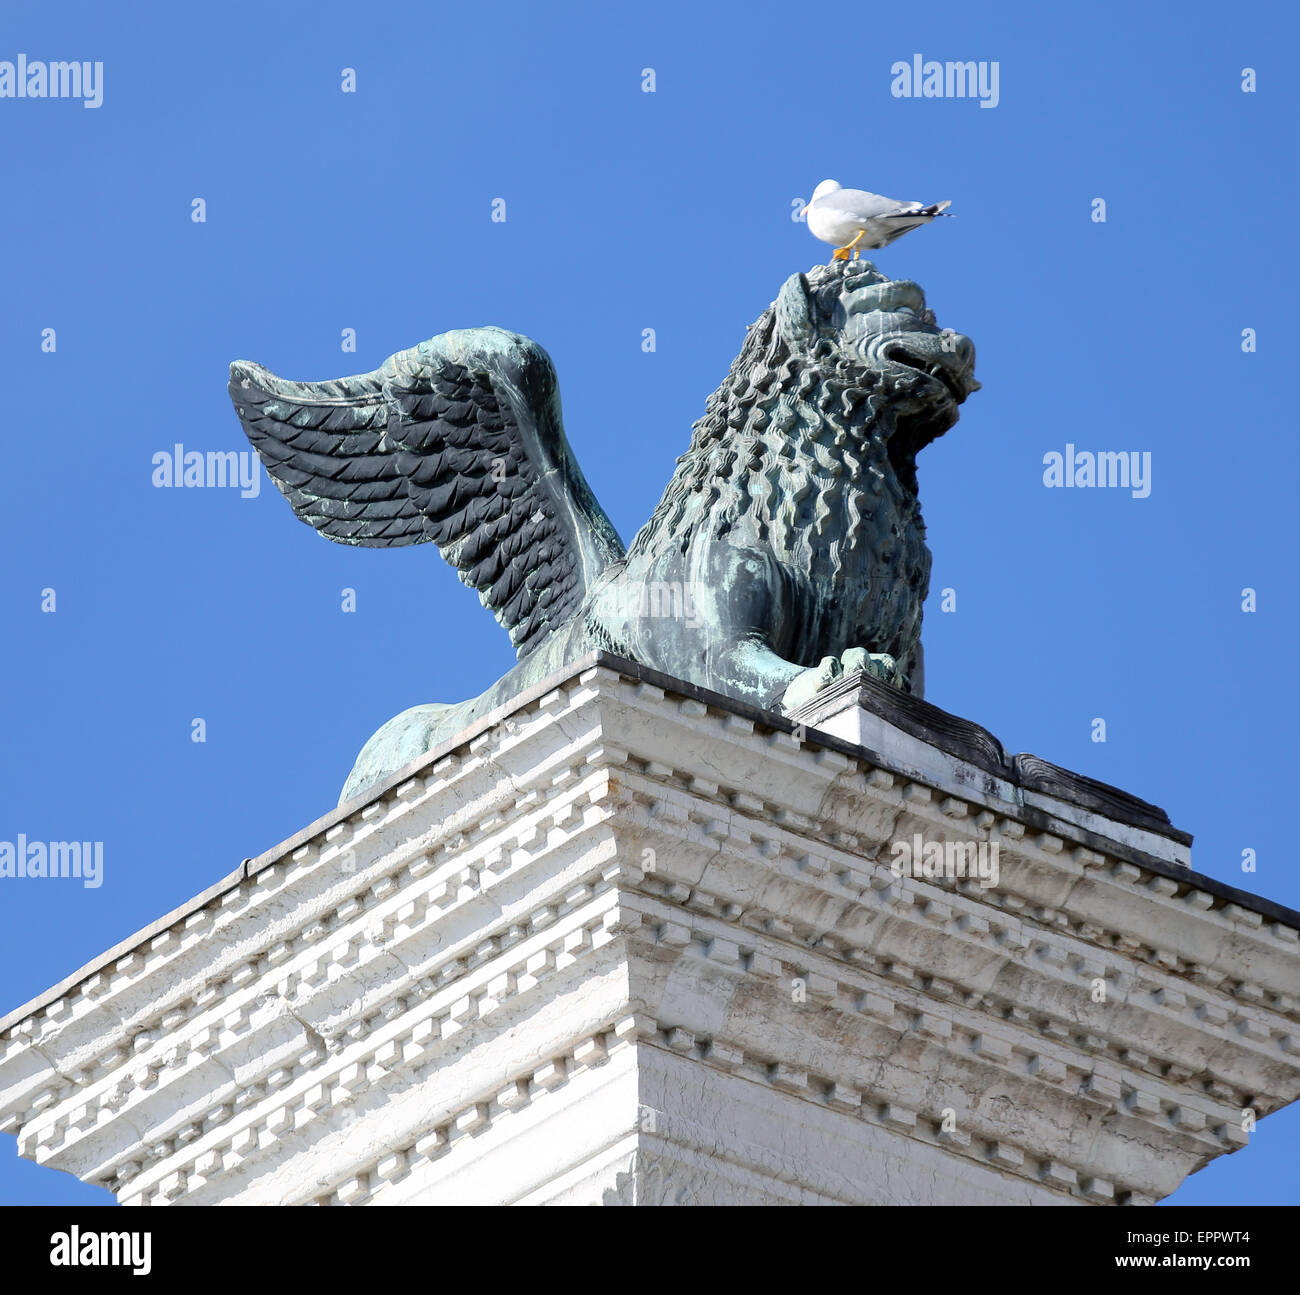 Leone alato statua in piazza san marco a venezia e Seagull in testa su Mane Foto Stock